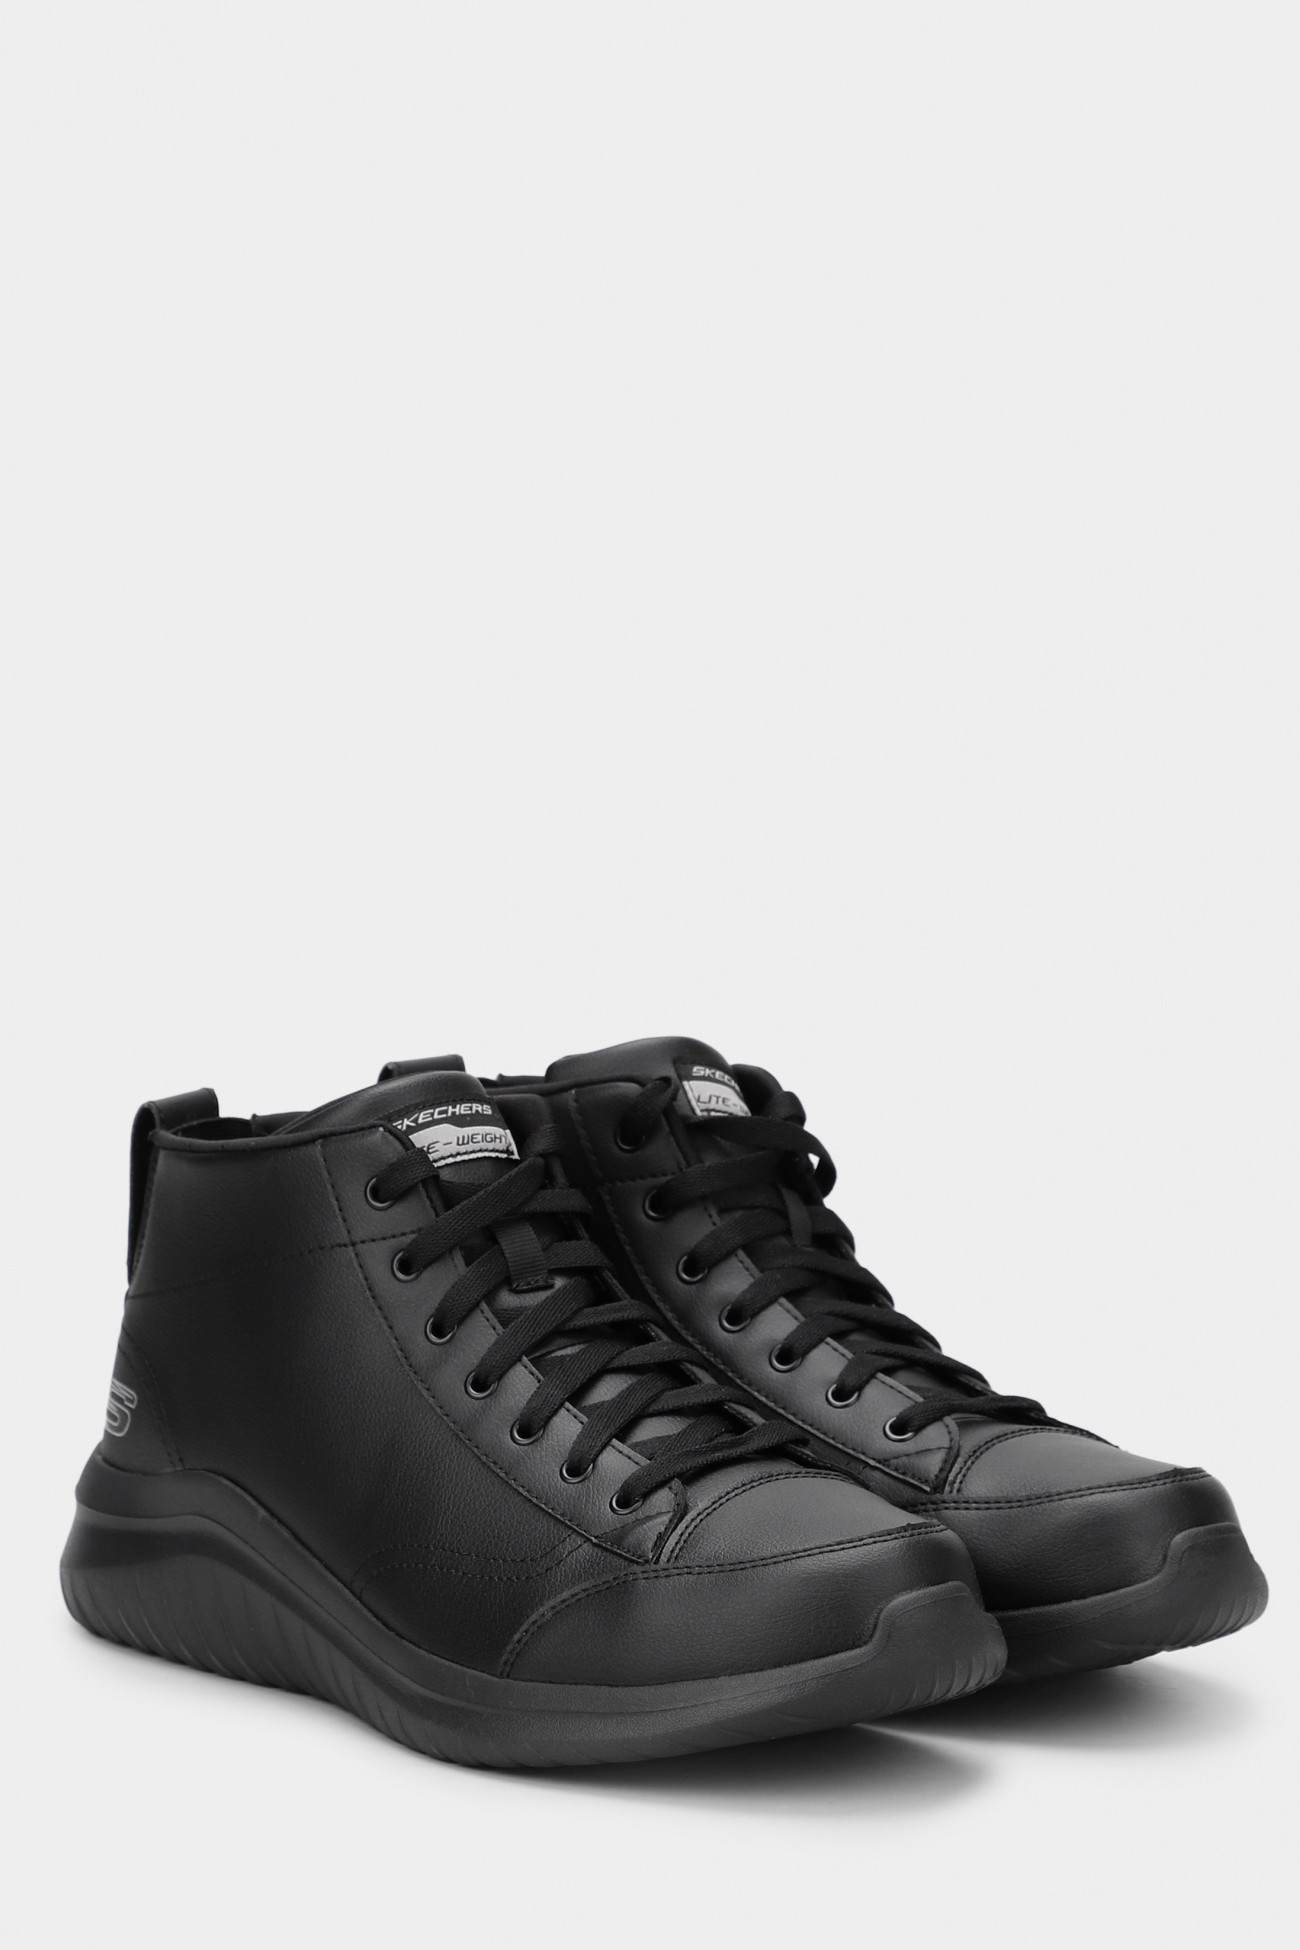 Ботинки мужские Skechers Ultra Flex 2.0 черные 232110 BBK изображение 2